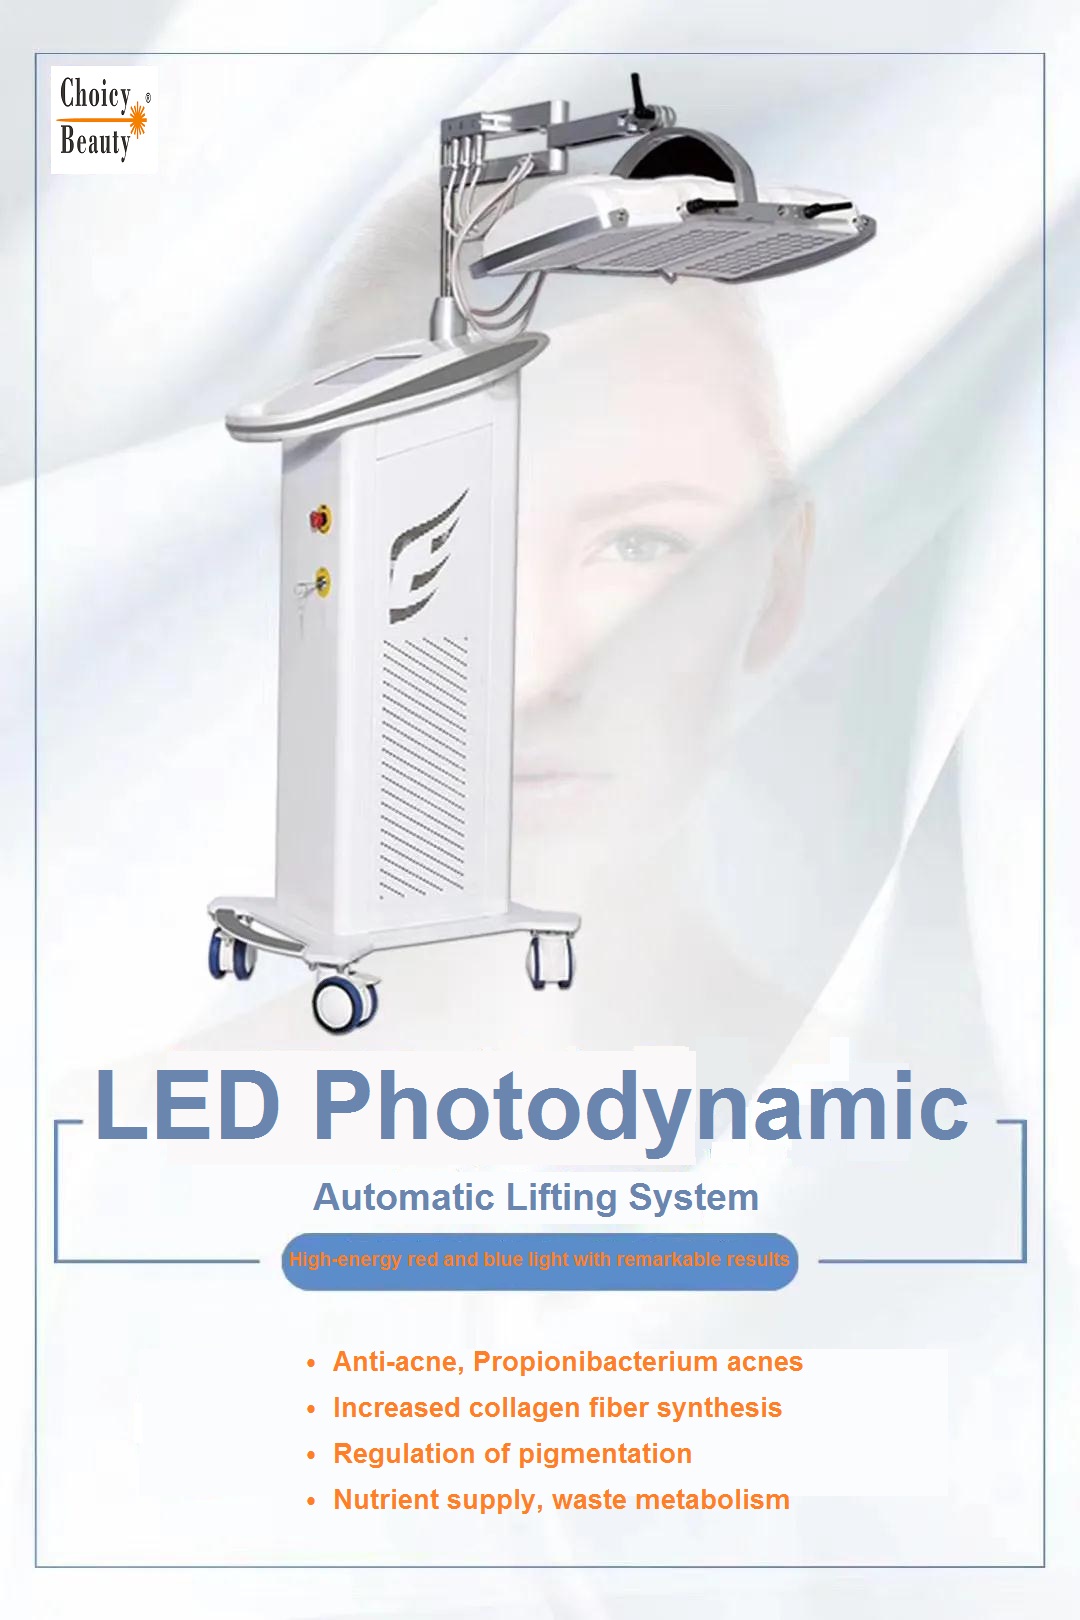 LED photodynamics